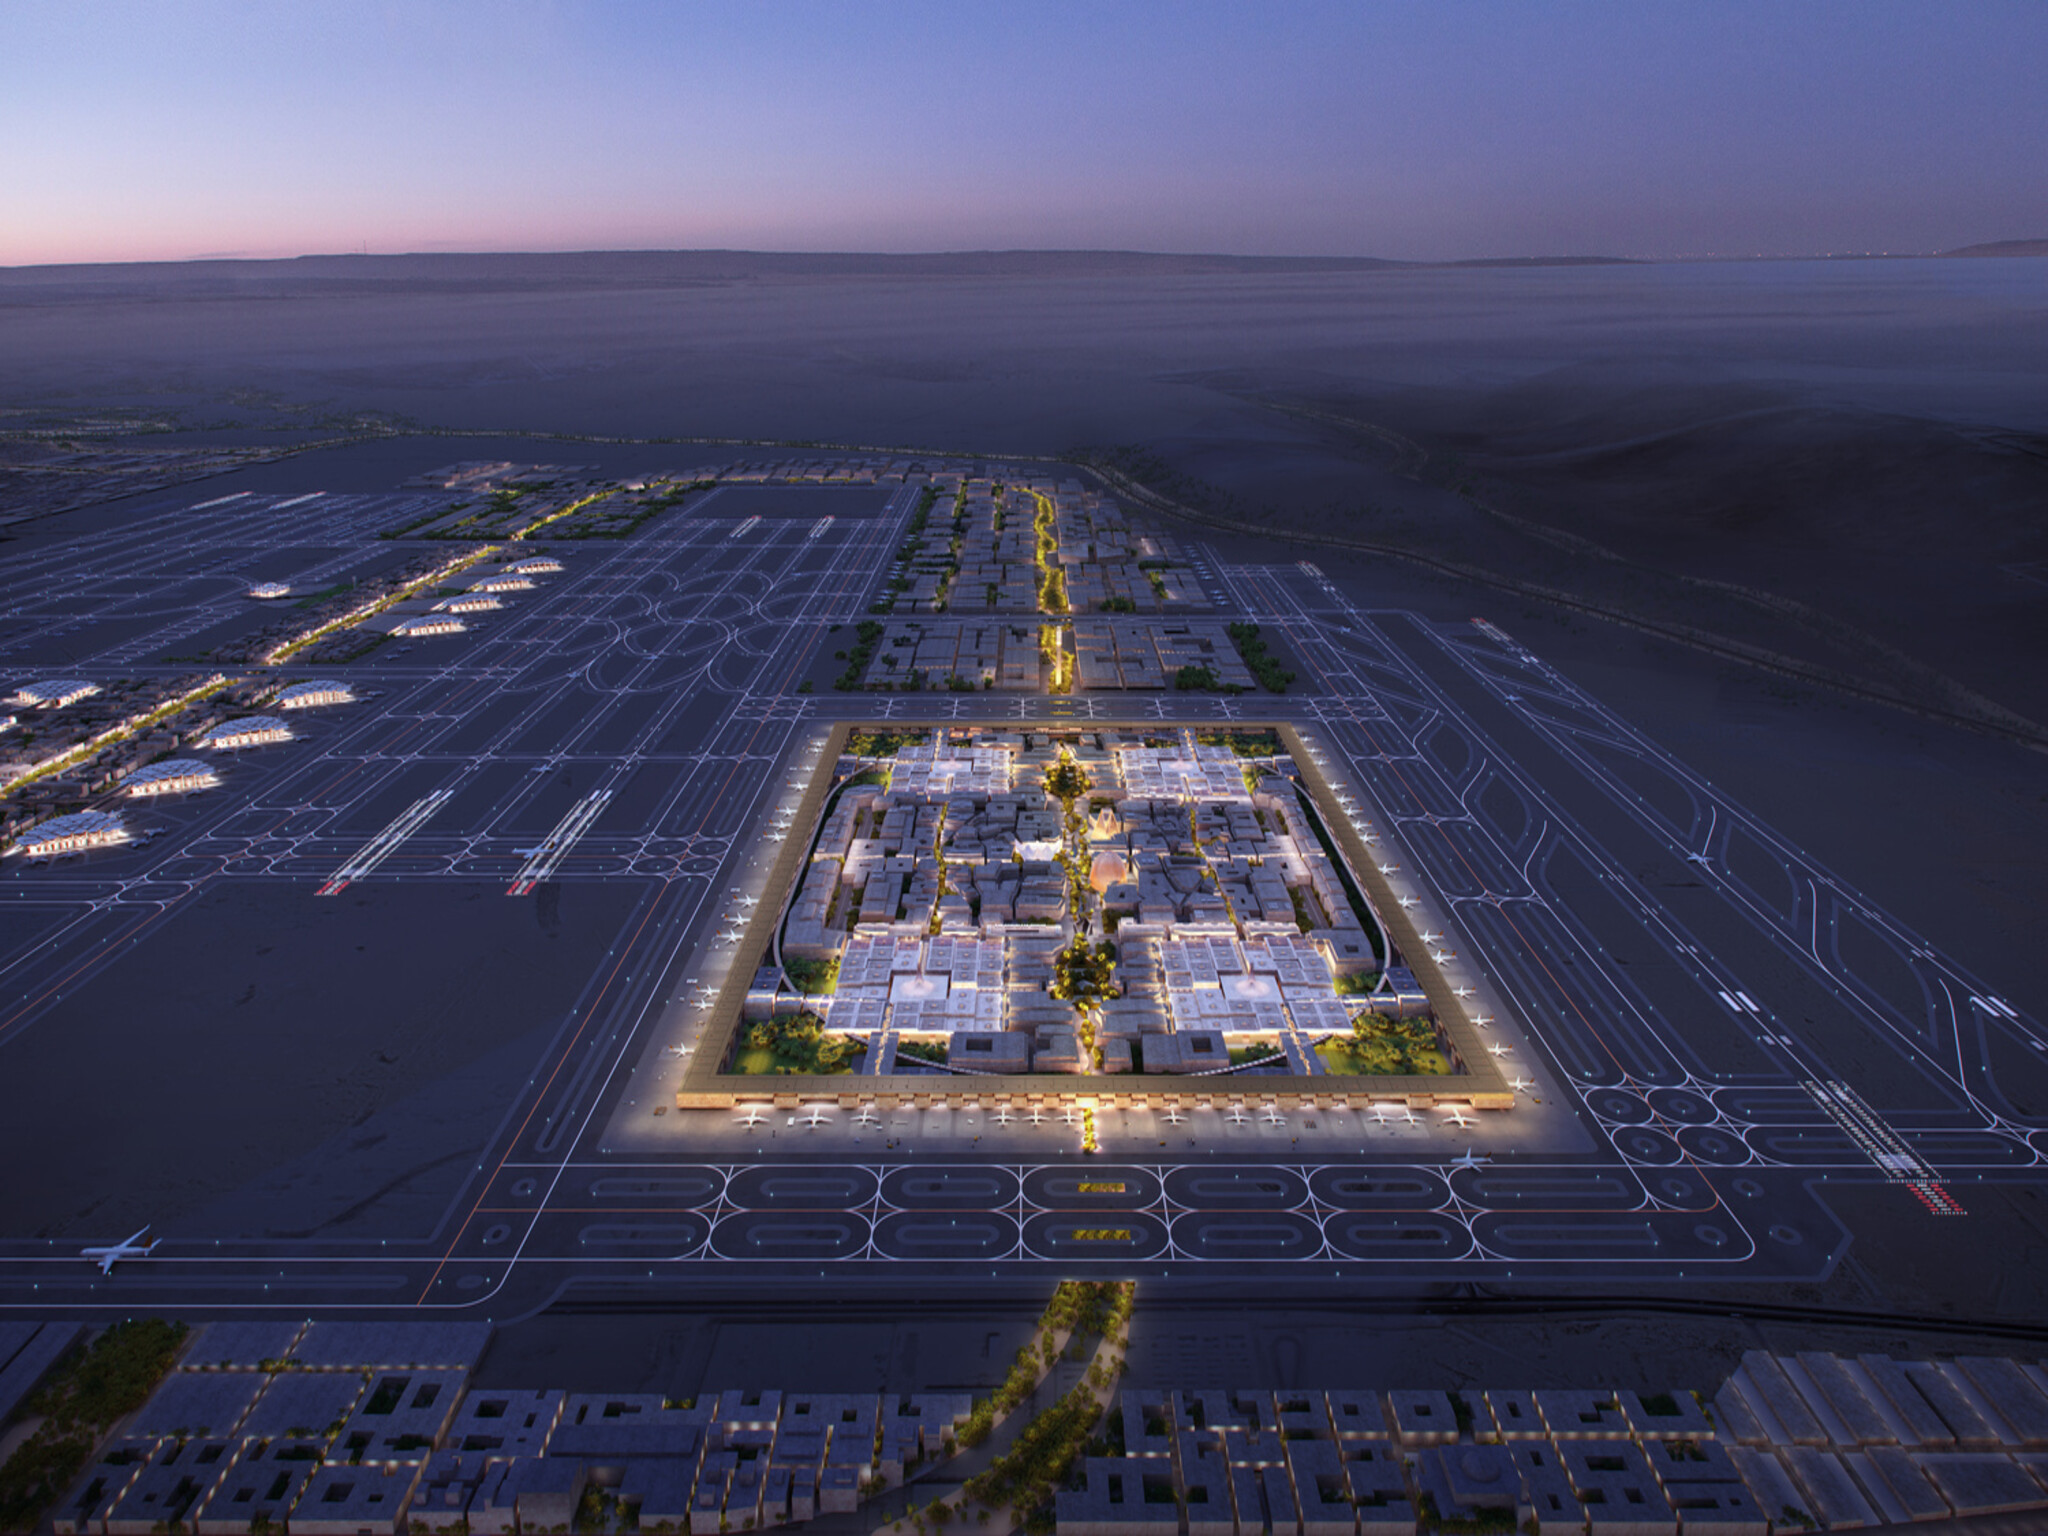 مطار الملك سلمان الجديد بمدينة الرياض روعة لا مثيل لها  